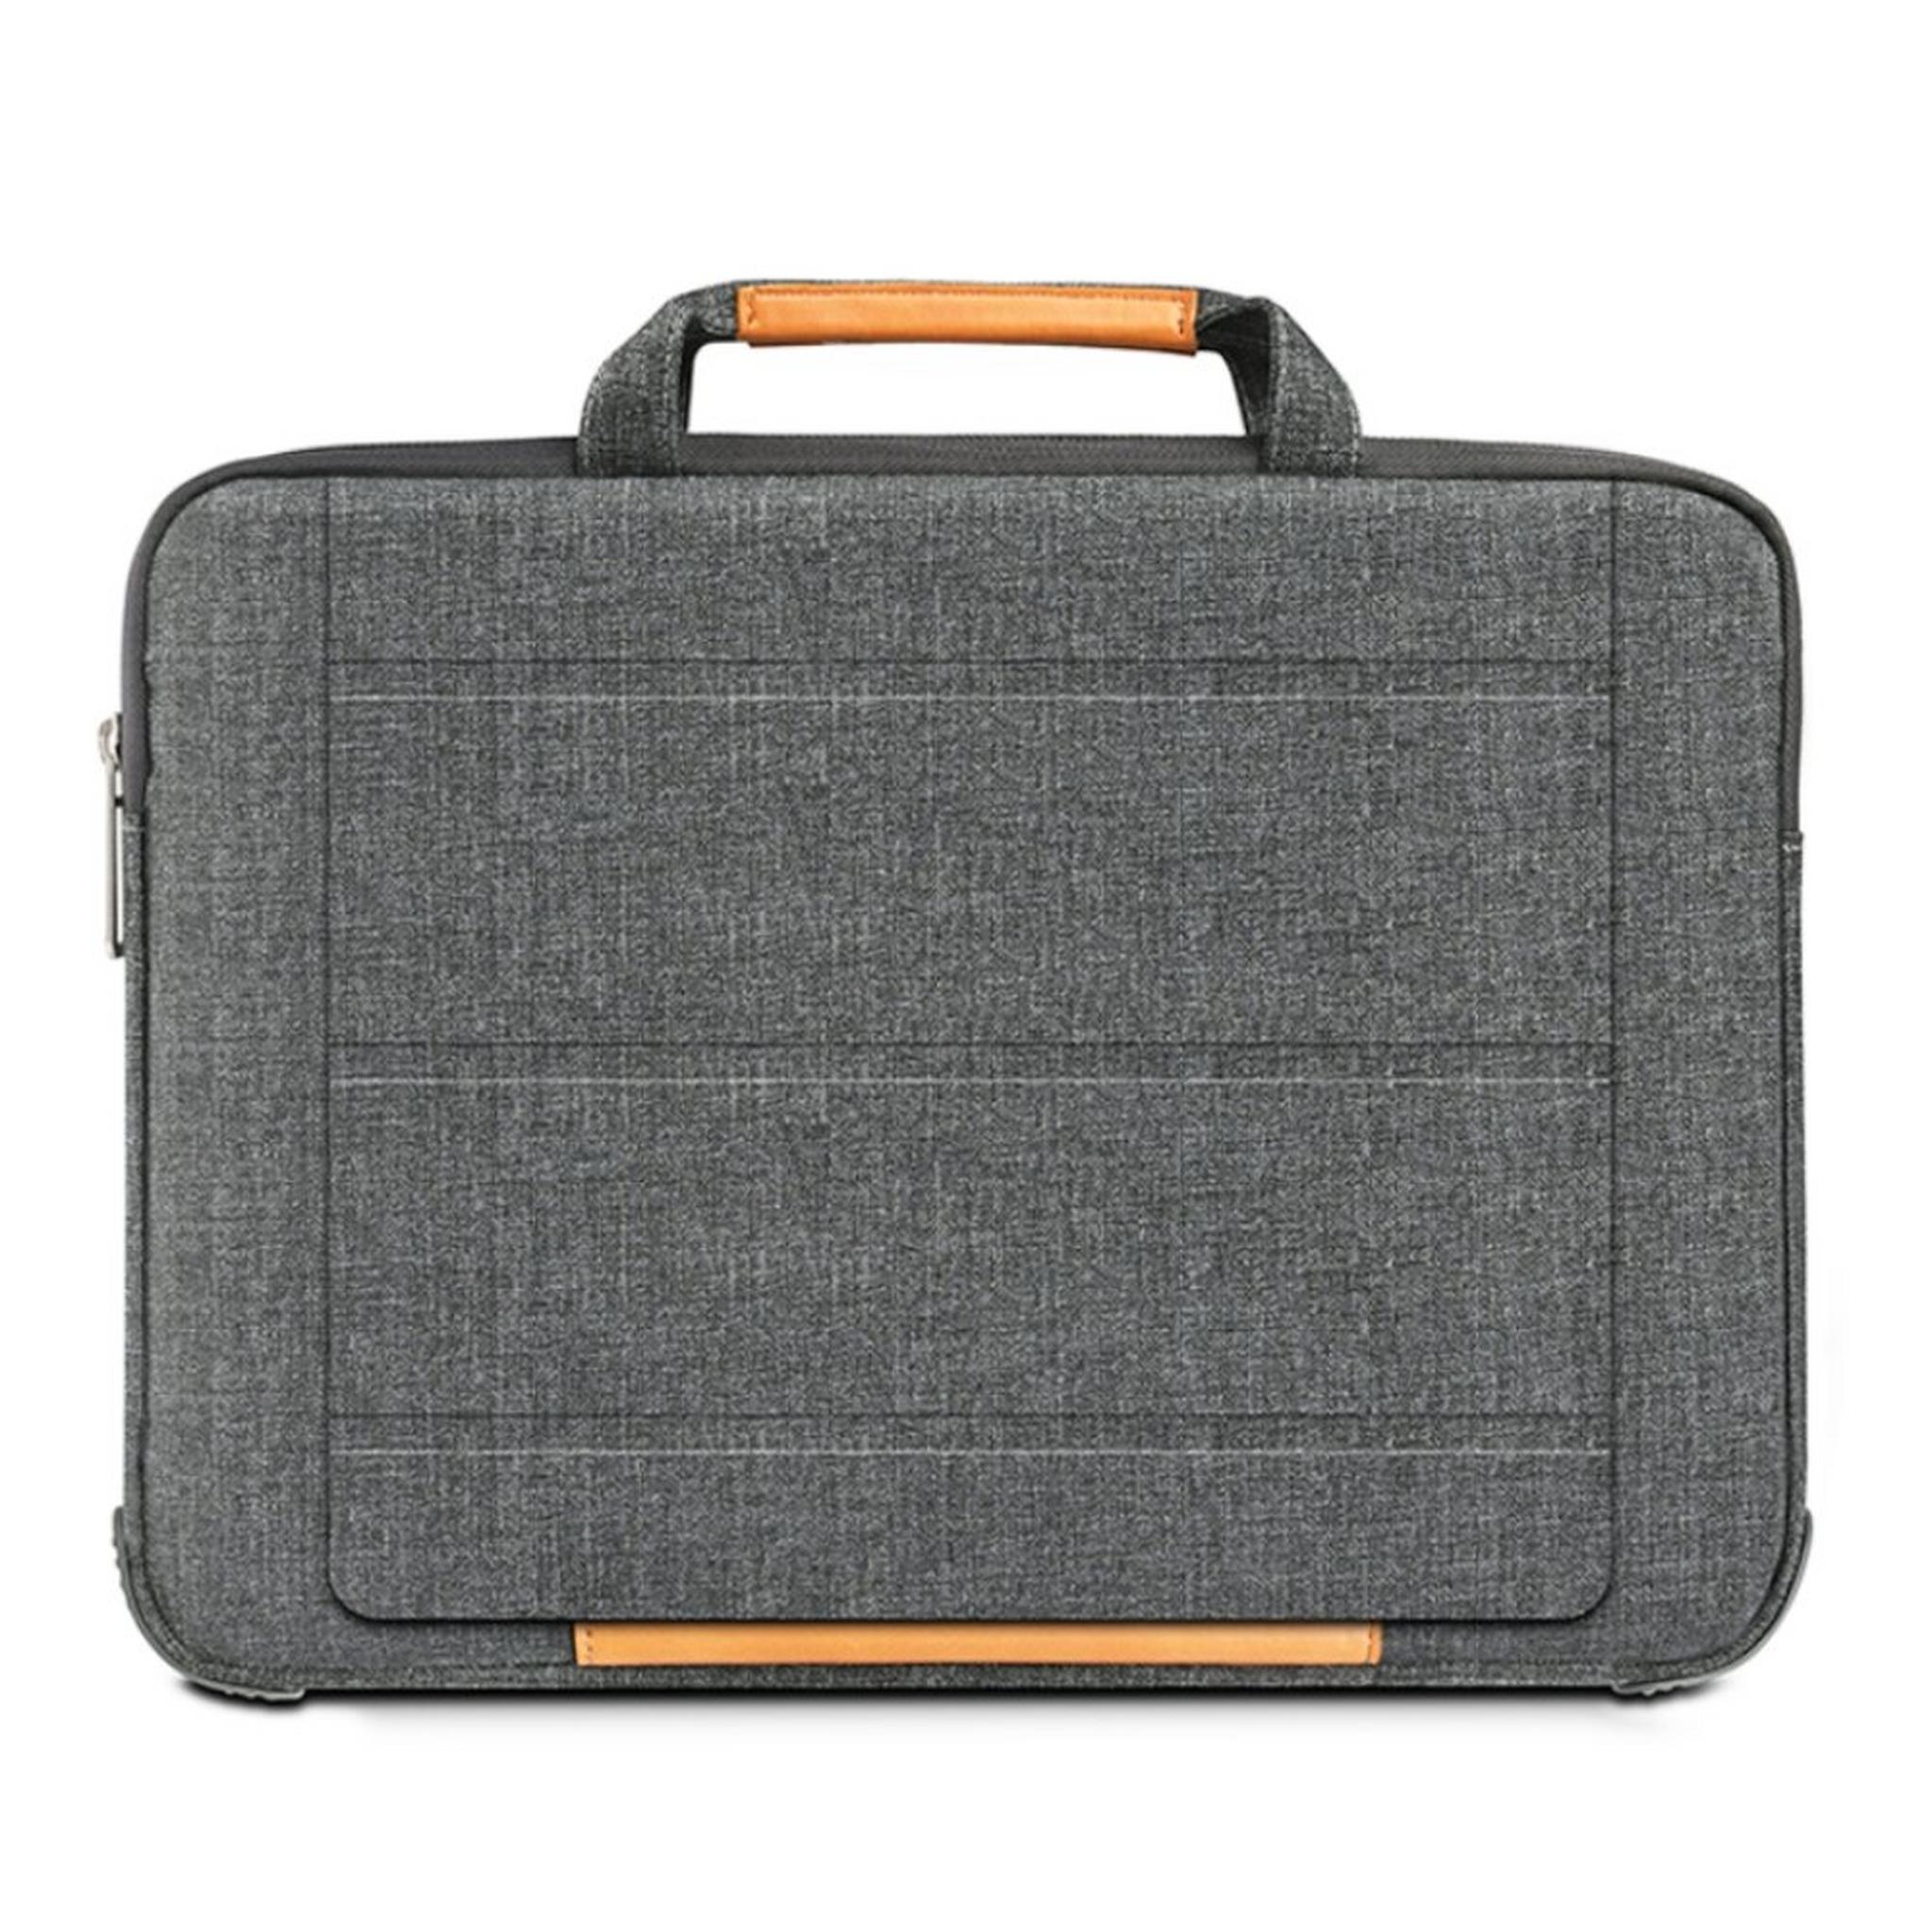 حقيبة اللابتوب الذكية لماك بوك آير بحجم 13.3 بوصة من ويو - رمادي